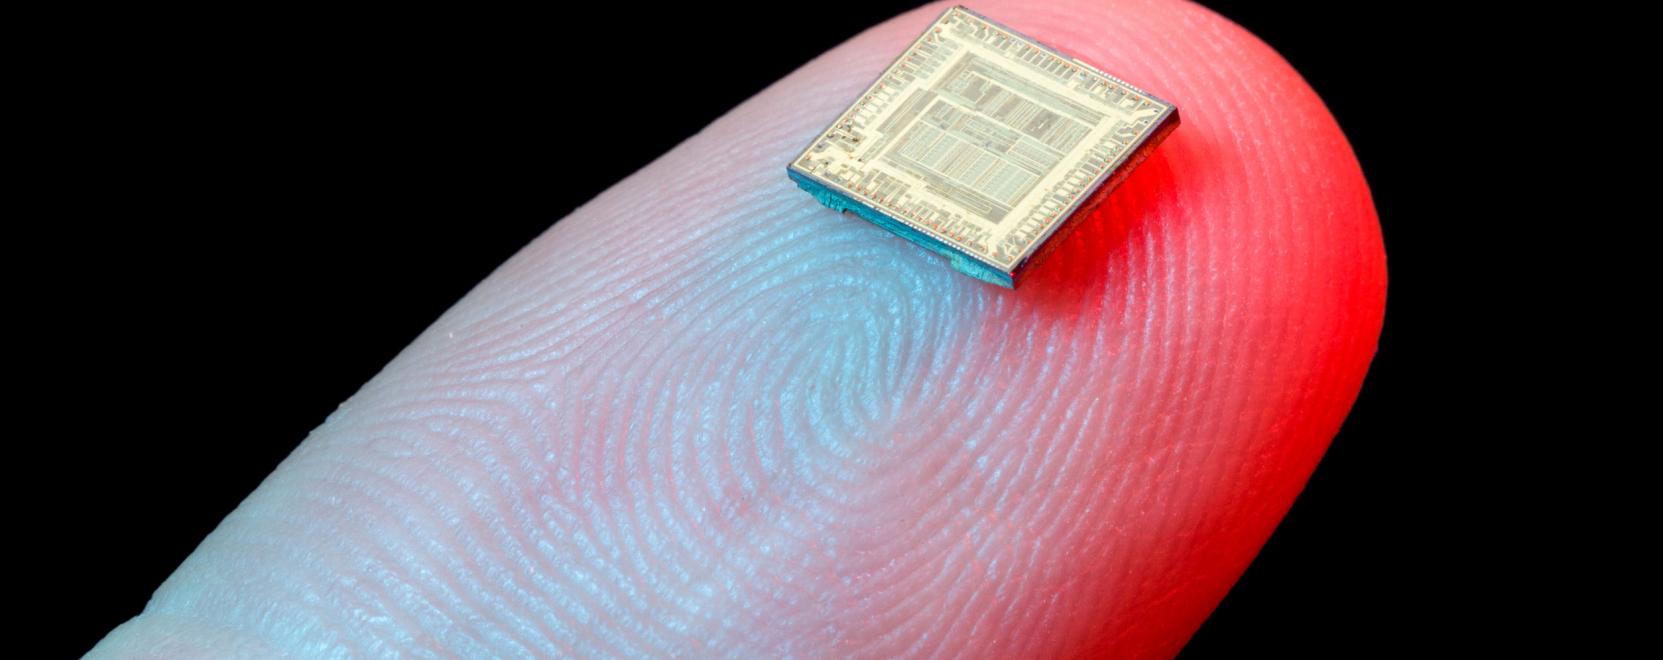 Ez már nem sci-fi: chipet ültetnek a munkavállalókba